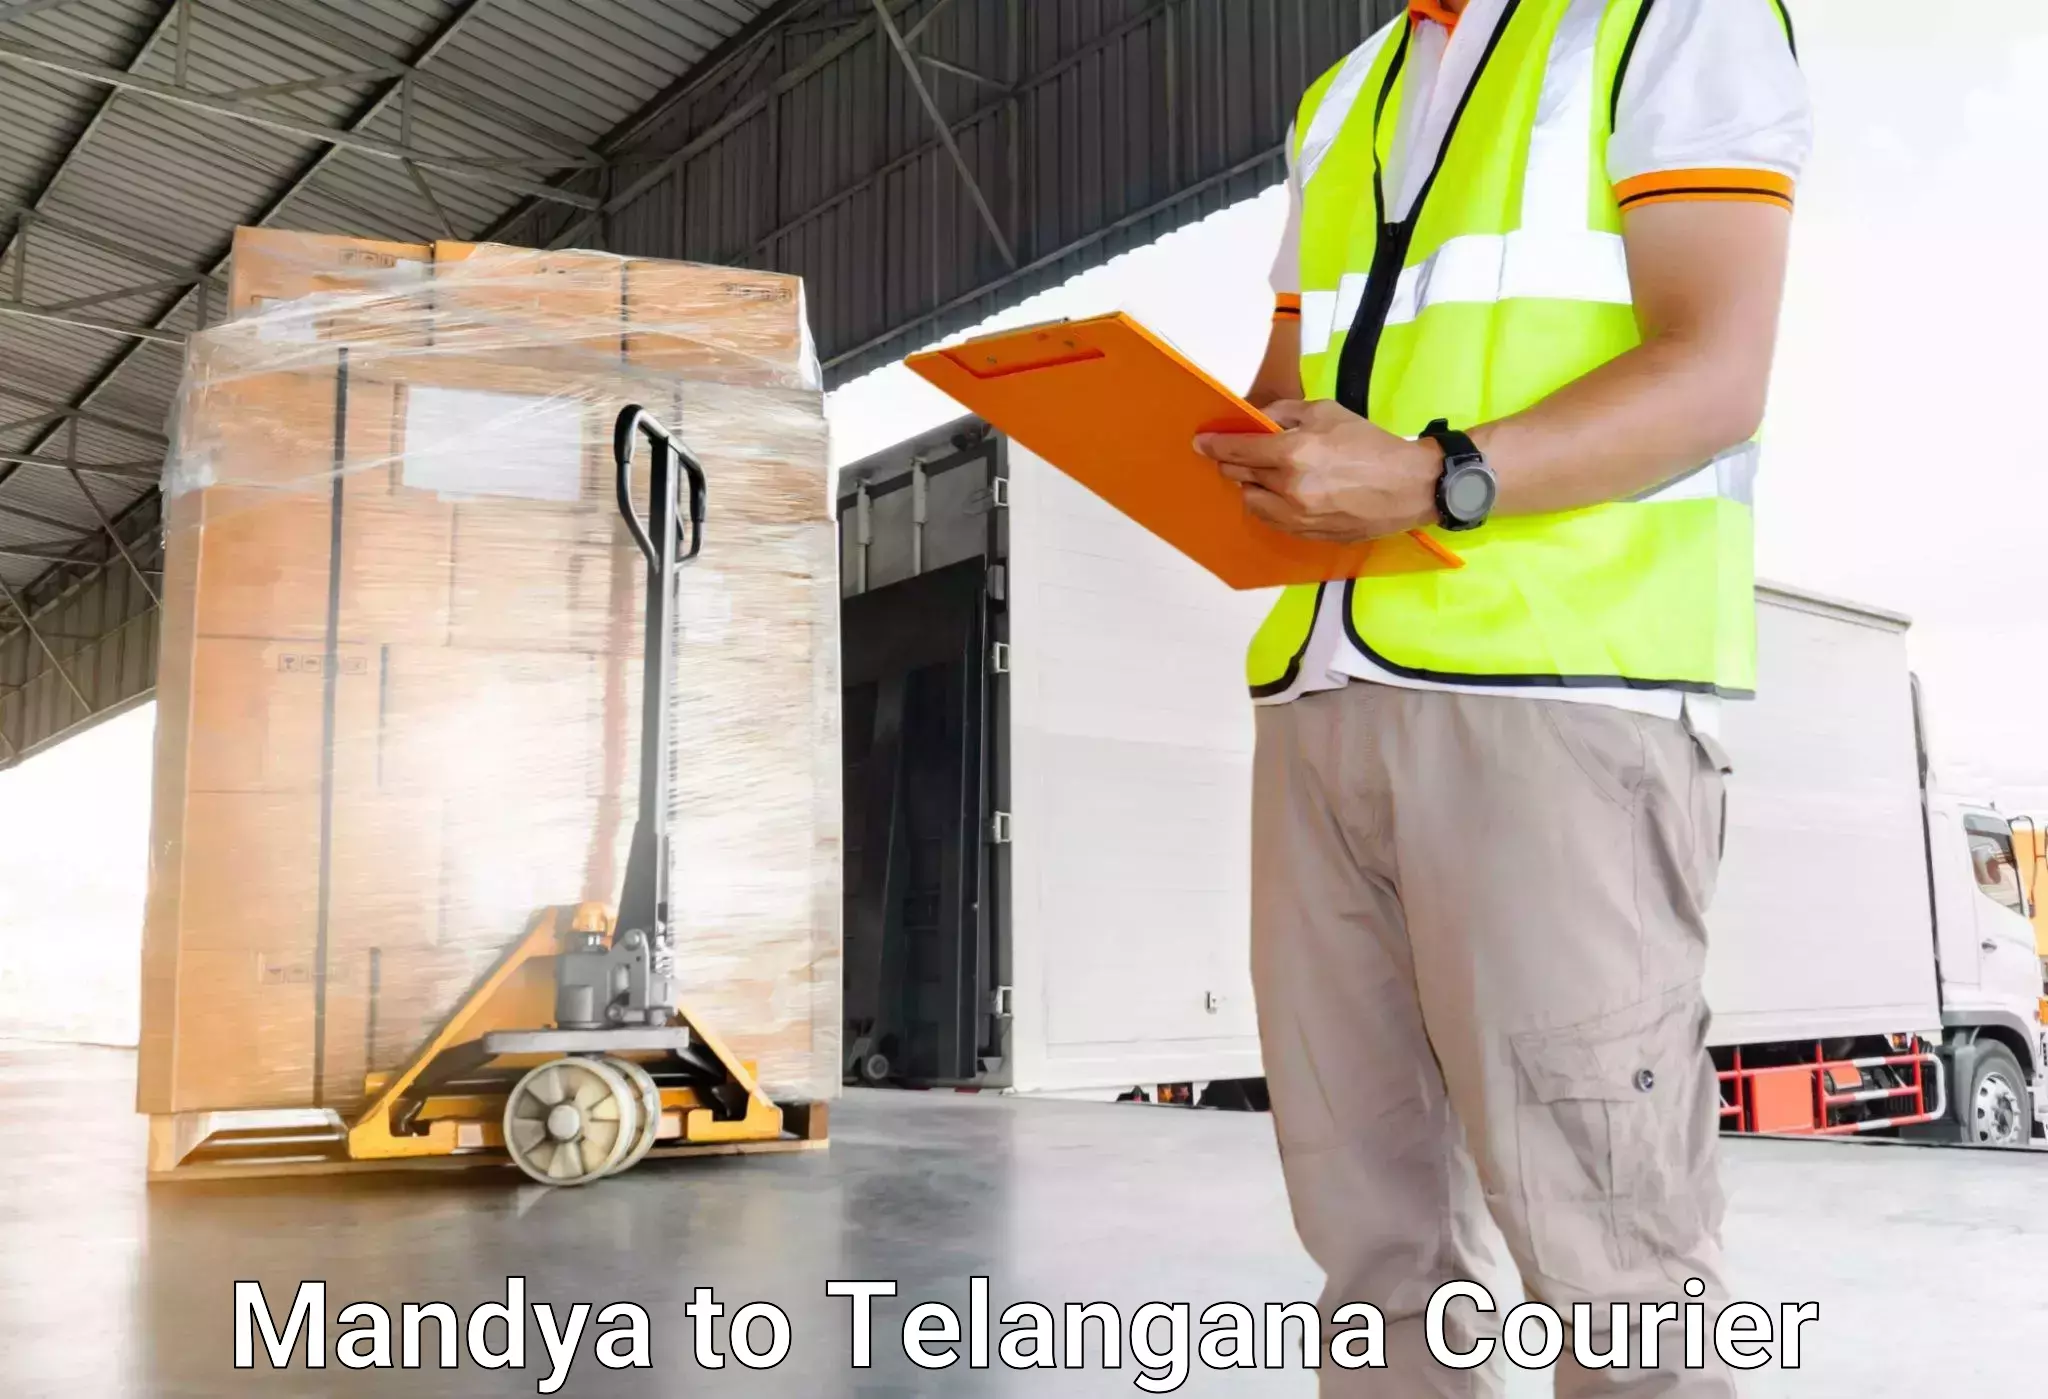 Automated luggage transport Mandya to Rudrangi